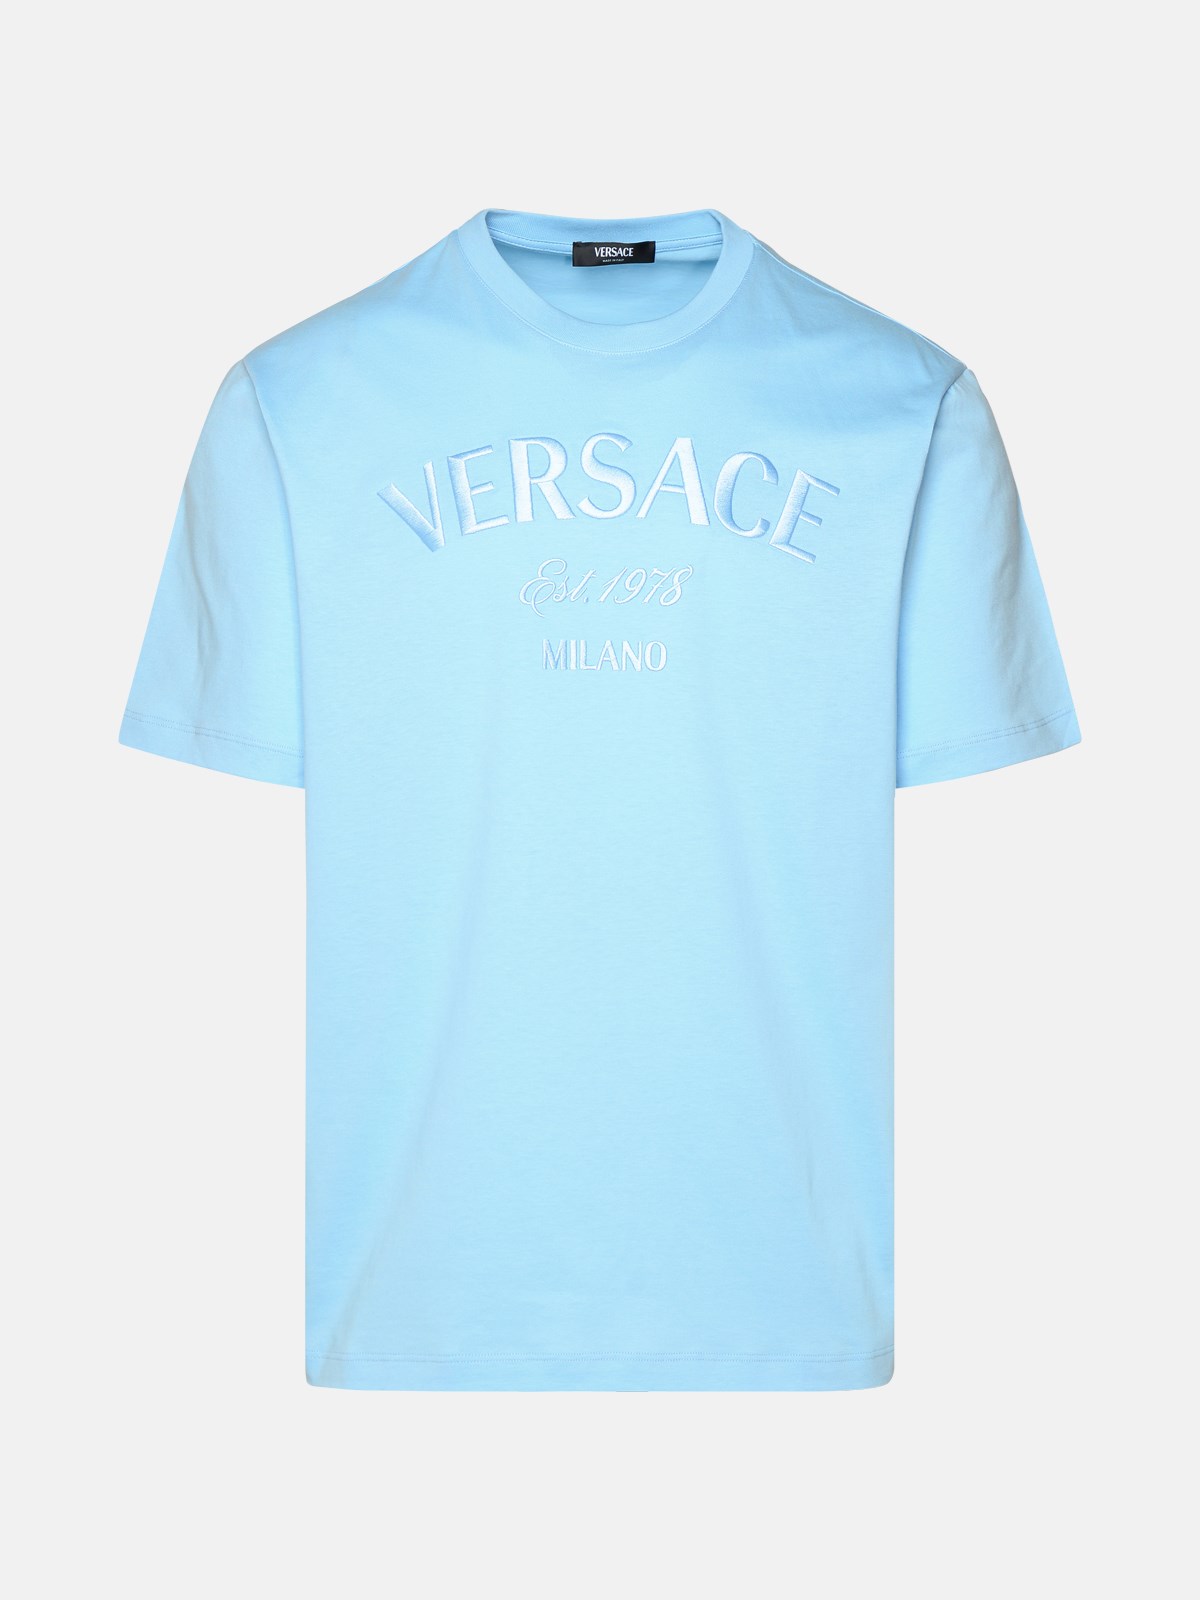 Versace Kids' Light Blue Cotton T-shirt